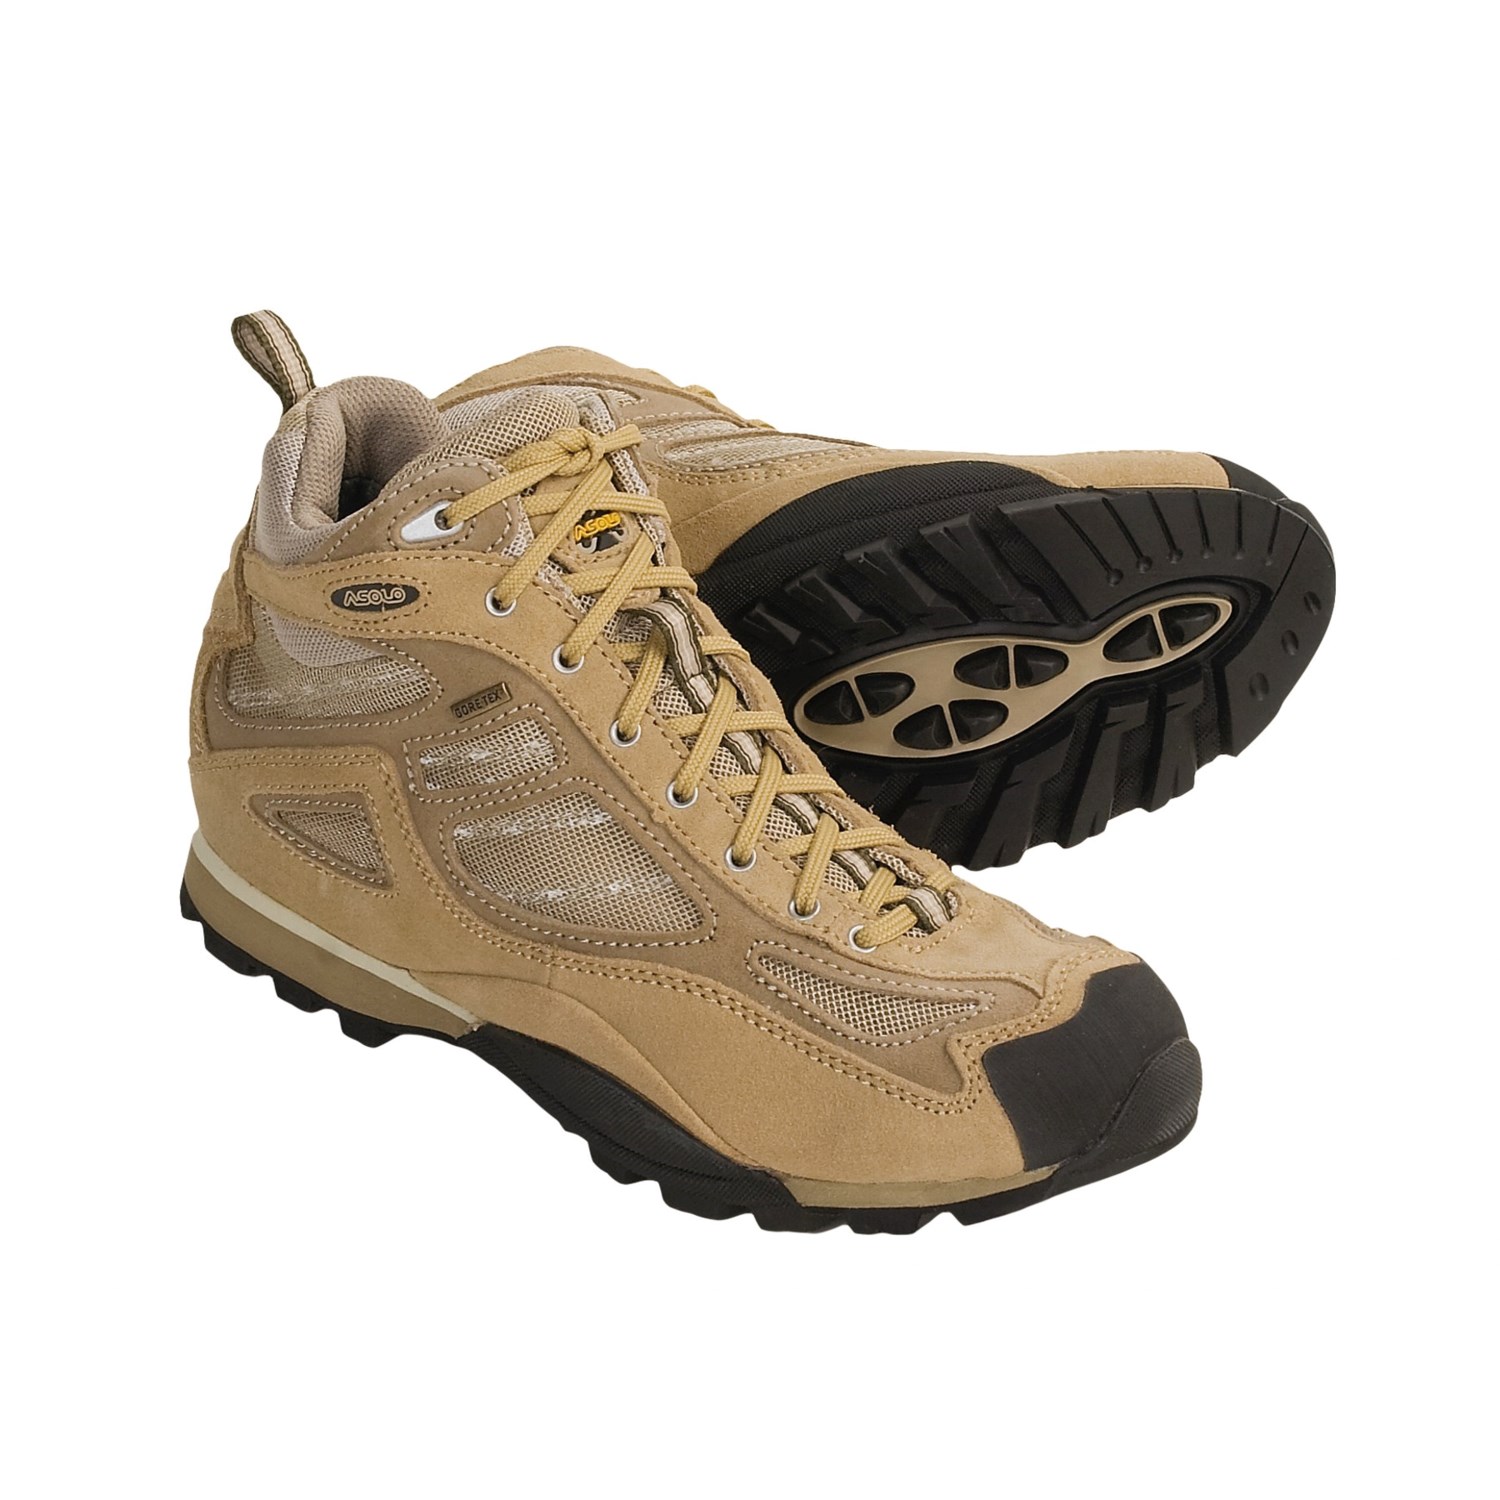 Waterproof Boots Amazon